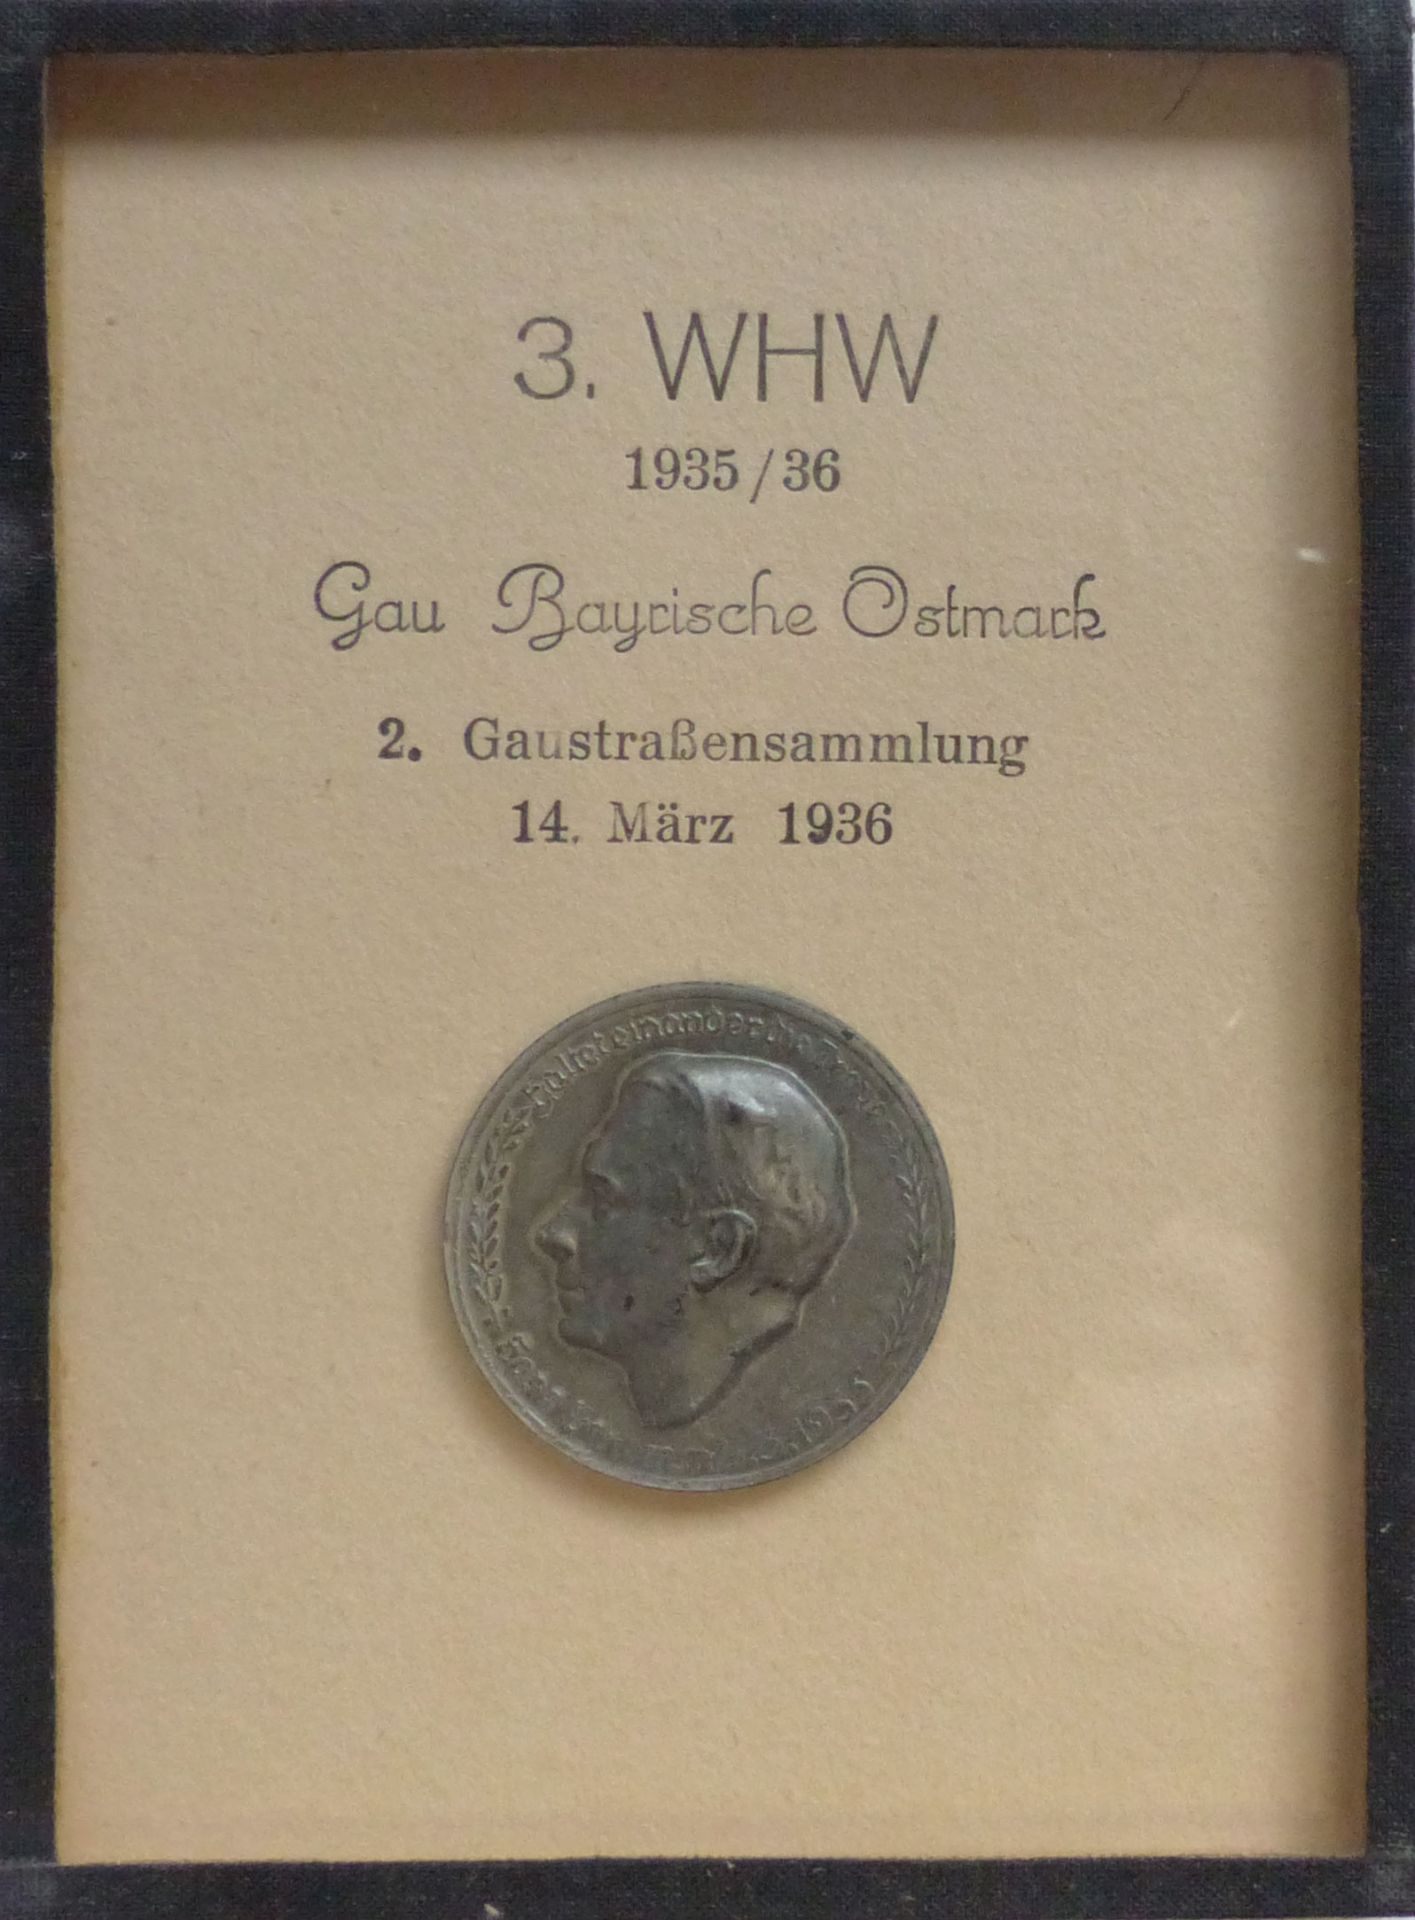 WHW Gau Bayrische Ostmark Gaustraßensammlung März 1936 Abzeichen Rahmen 9x12 cm I-II